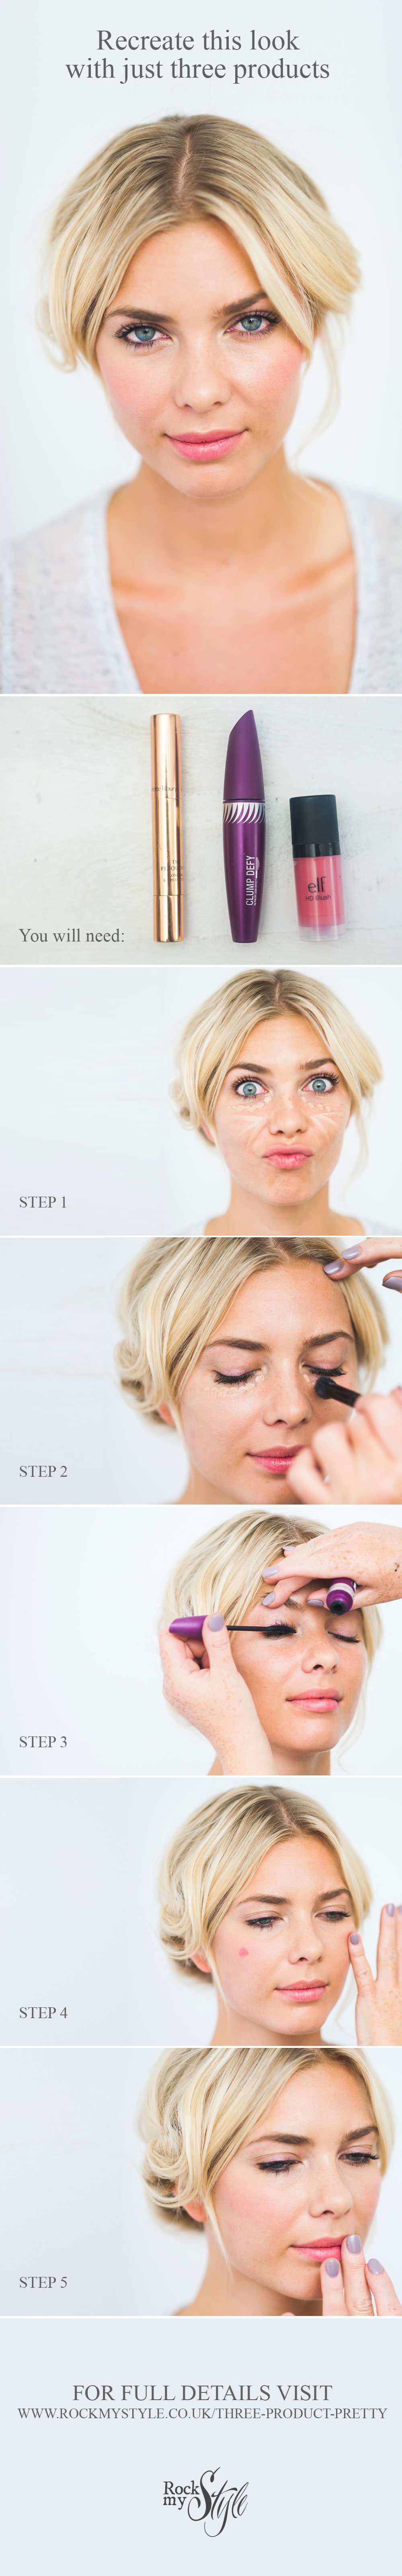 DIY quick makeup tutorial